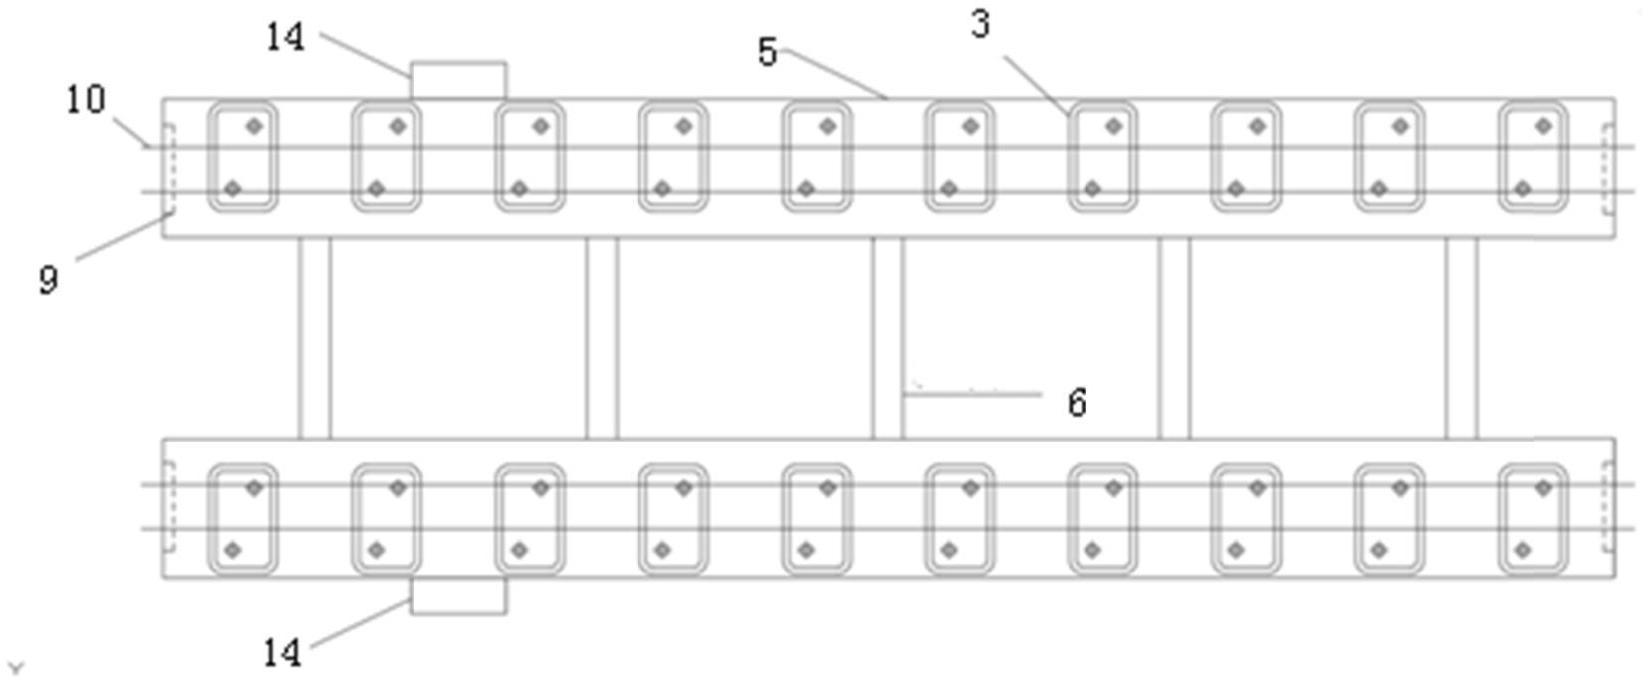 地铁设计获得实用新型专利授权：“一种纵连式梯形轨枕预制板轨道结构”(图1)